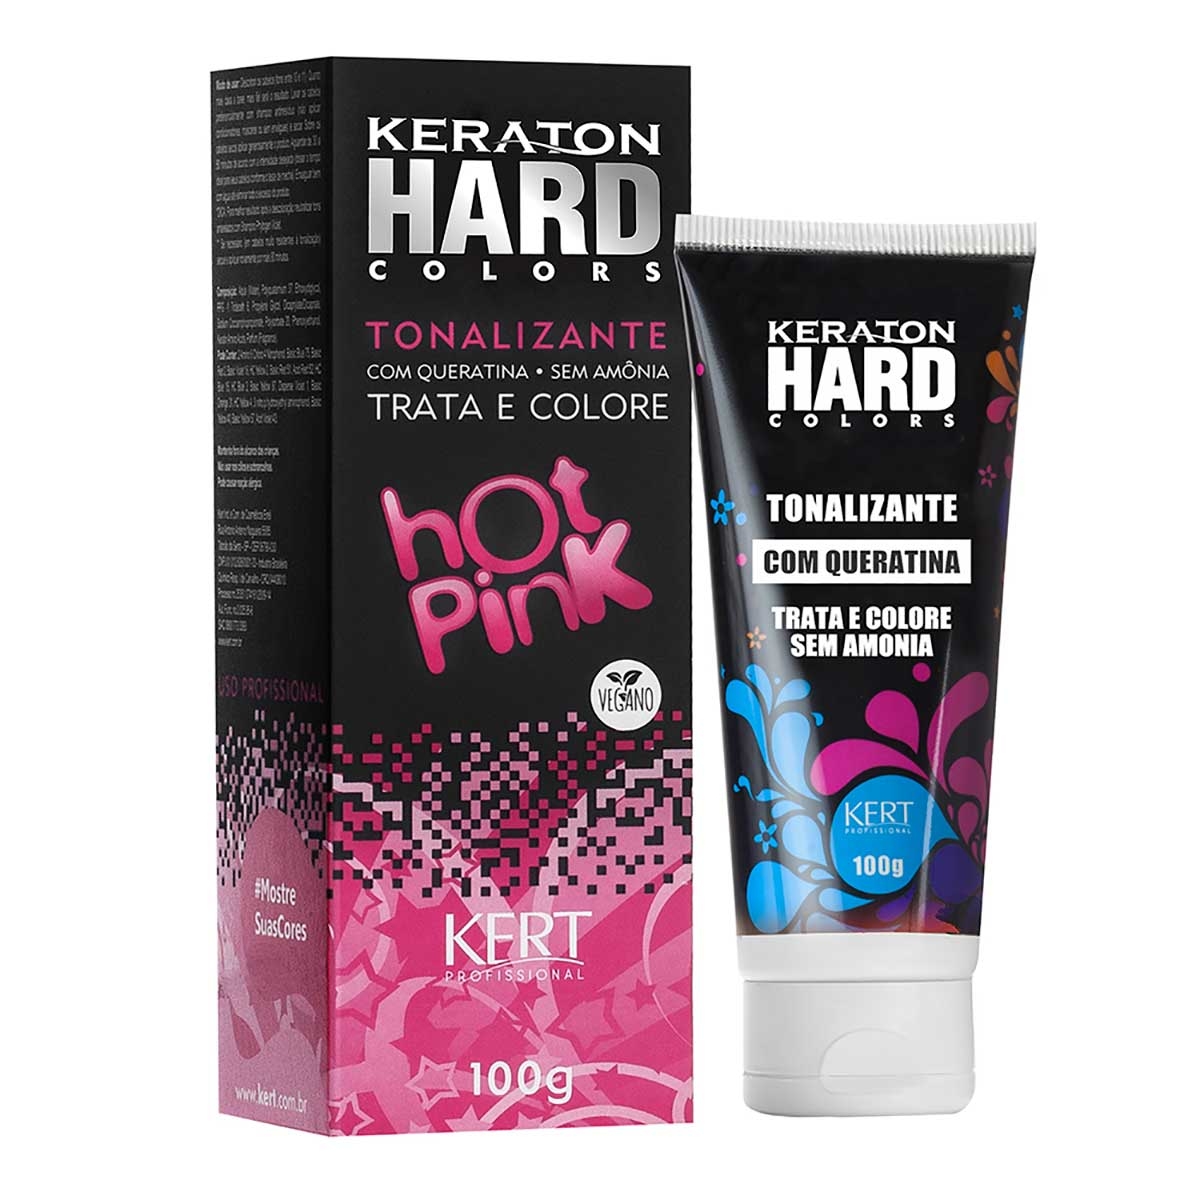 Tonalizante Keraton Hard Colors Hot Pink com 100g 100g